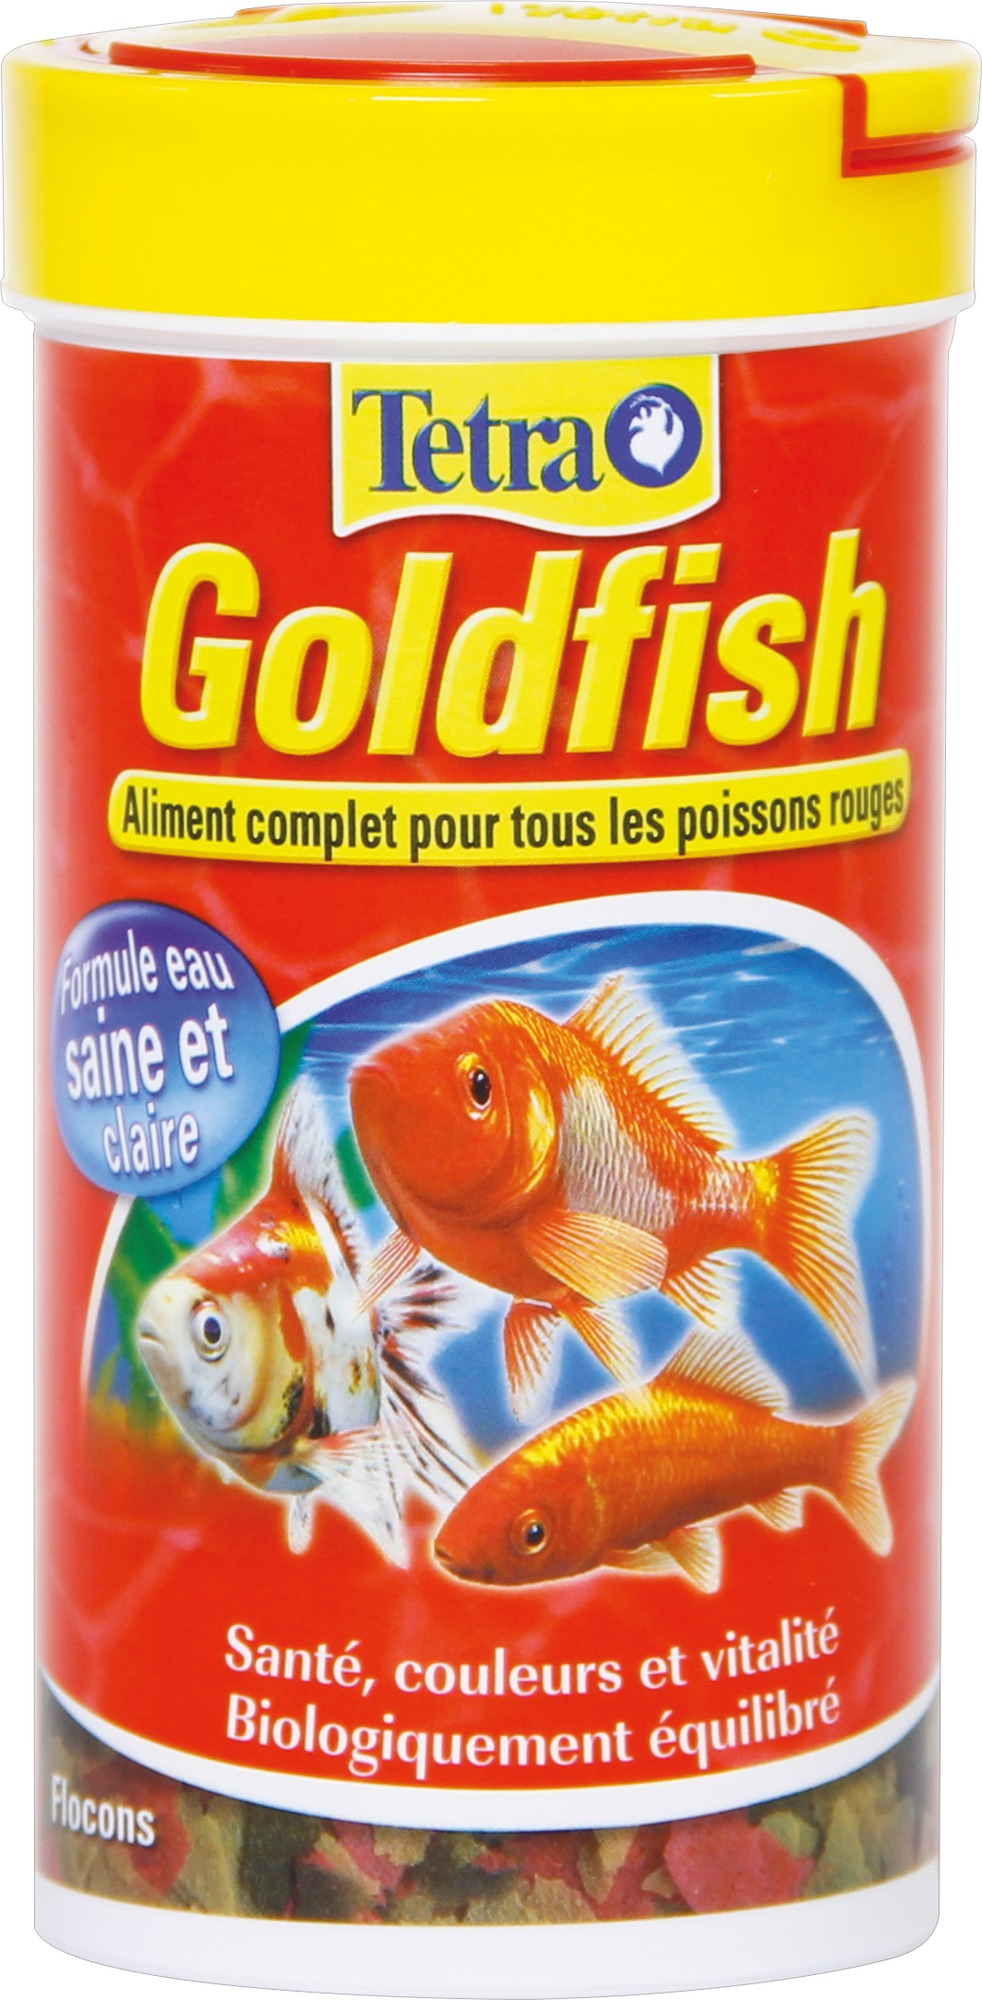 Nourriture poissons rouges Tetra Goldfish - Formule eau saine et claire